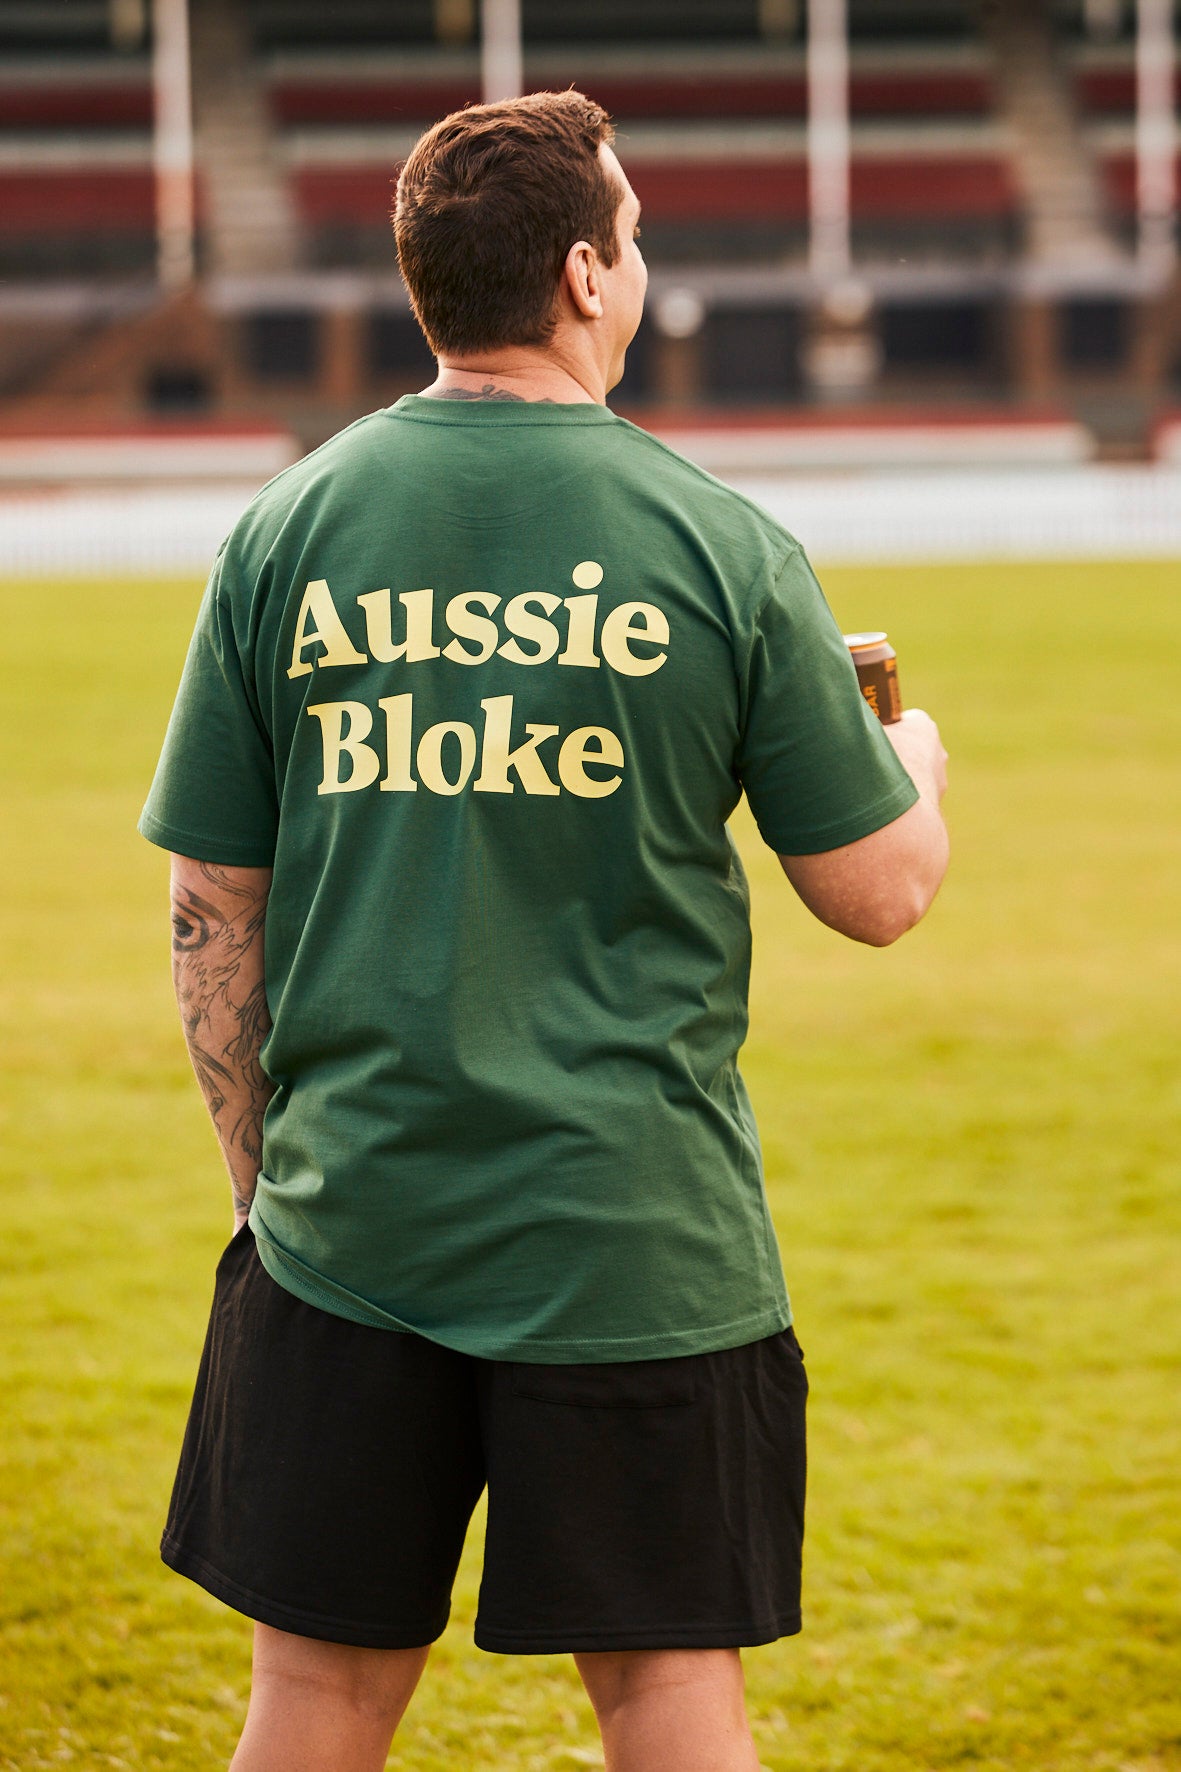 Aussie Bloke Tshirt